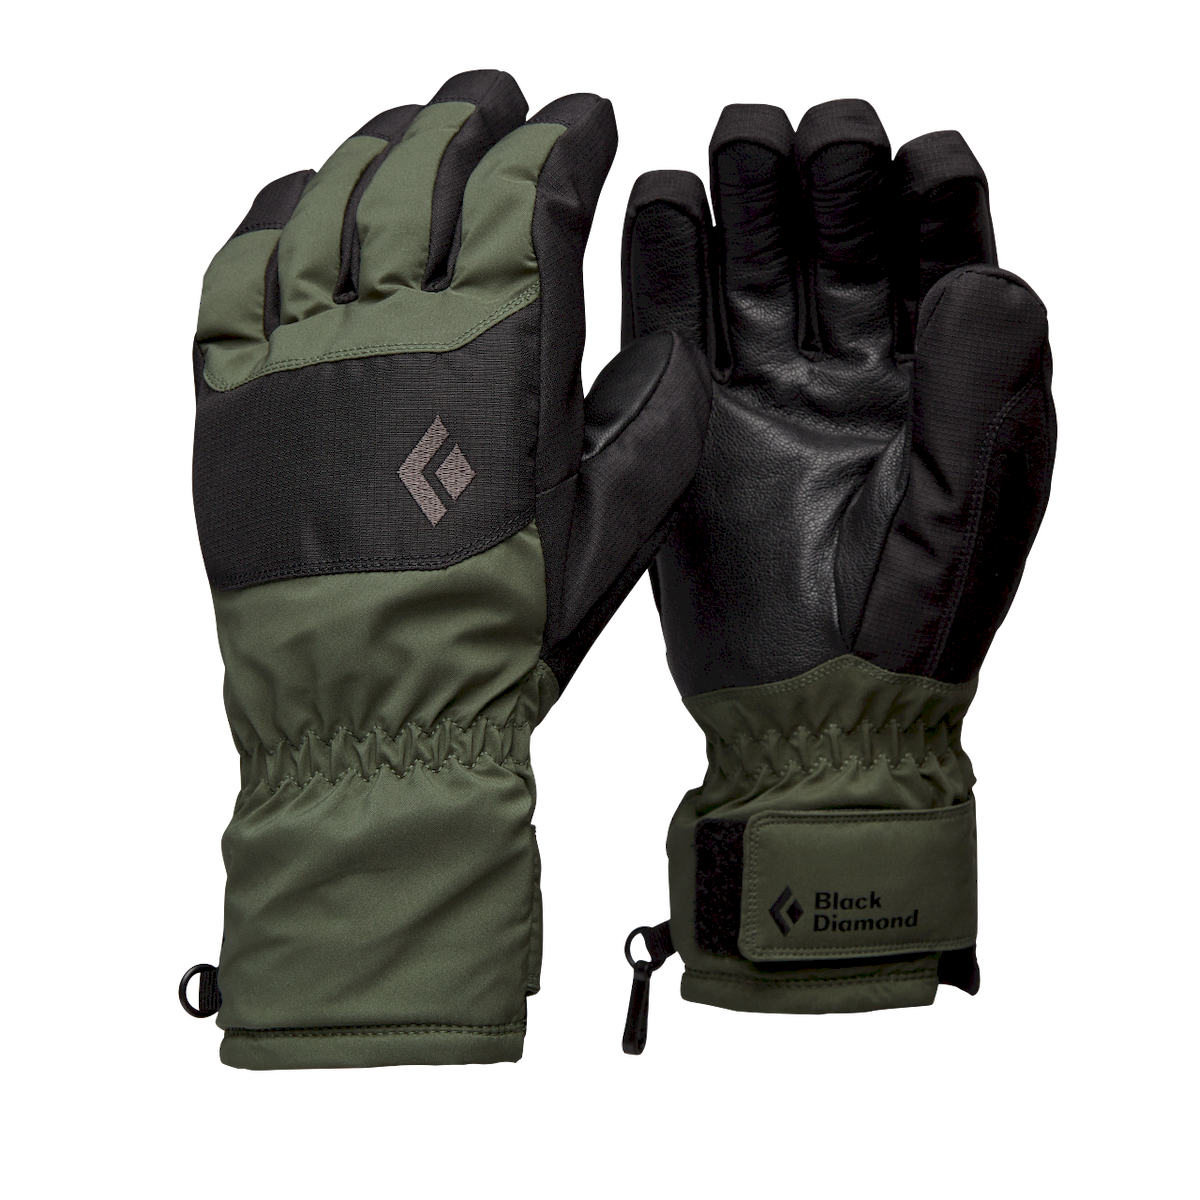 Black Diamond Mission LT Gloves - Ski gloves